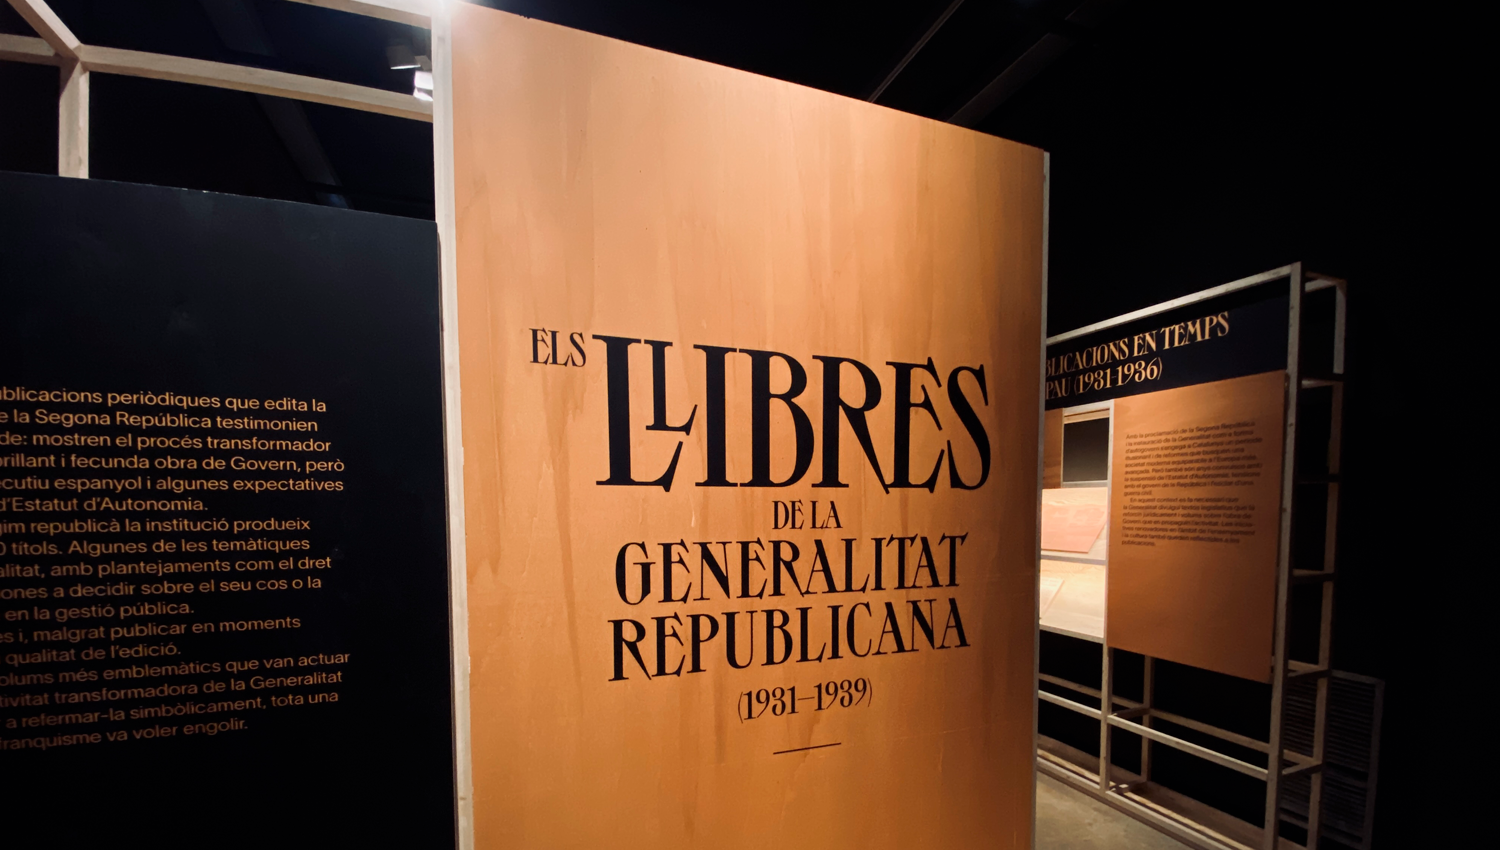 NUEVA EXPOSICIÓN EN EL PALAU ROBERT: LOS LIBROS DE LA GENERALITAT REPUBLICANA (1931 – 1939)